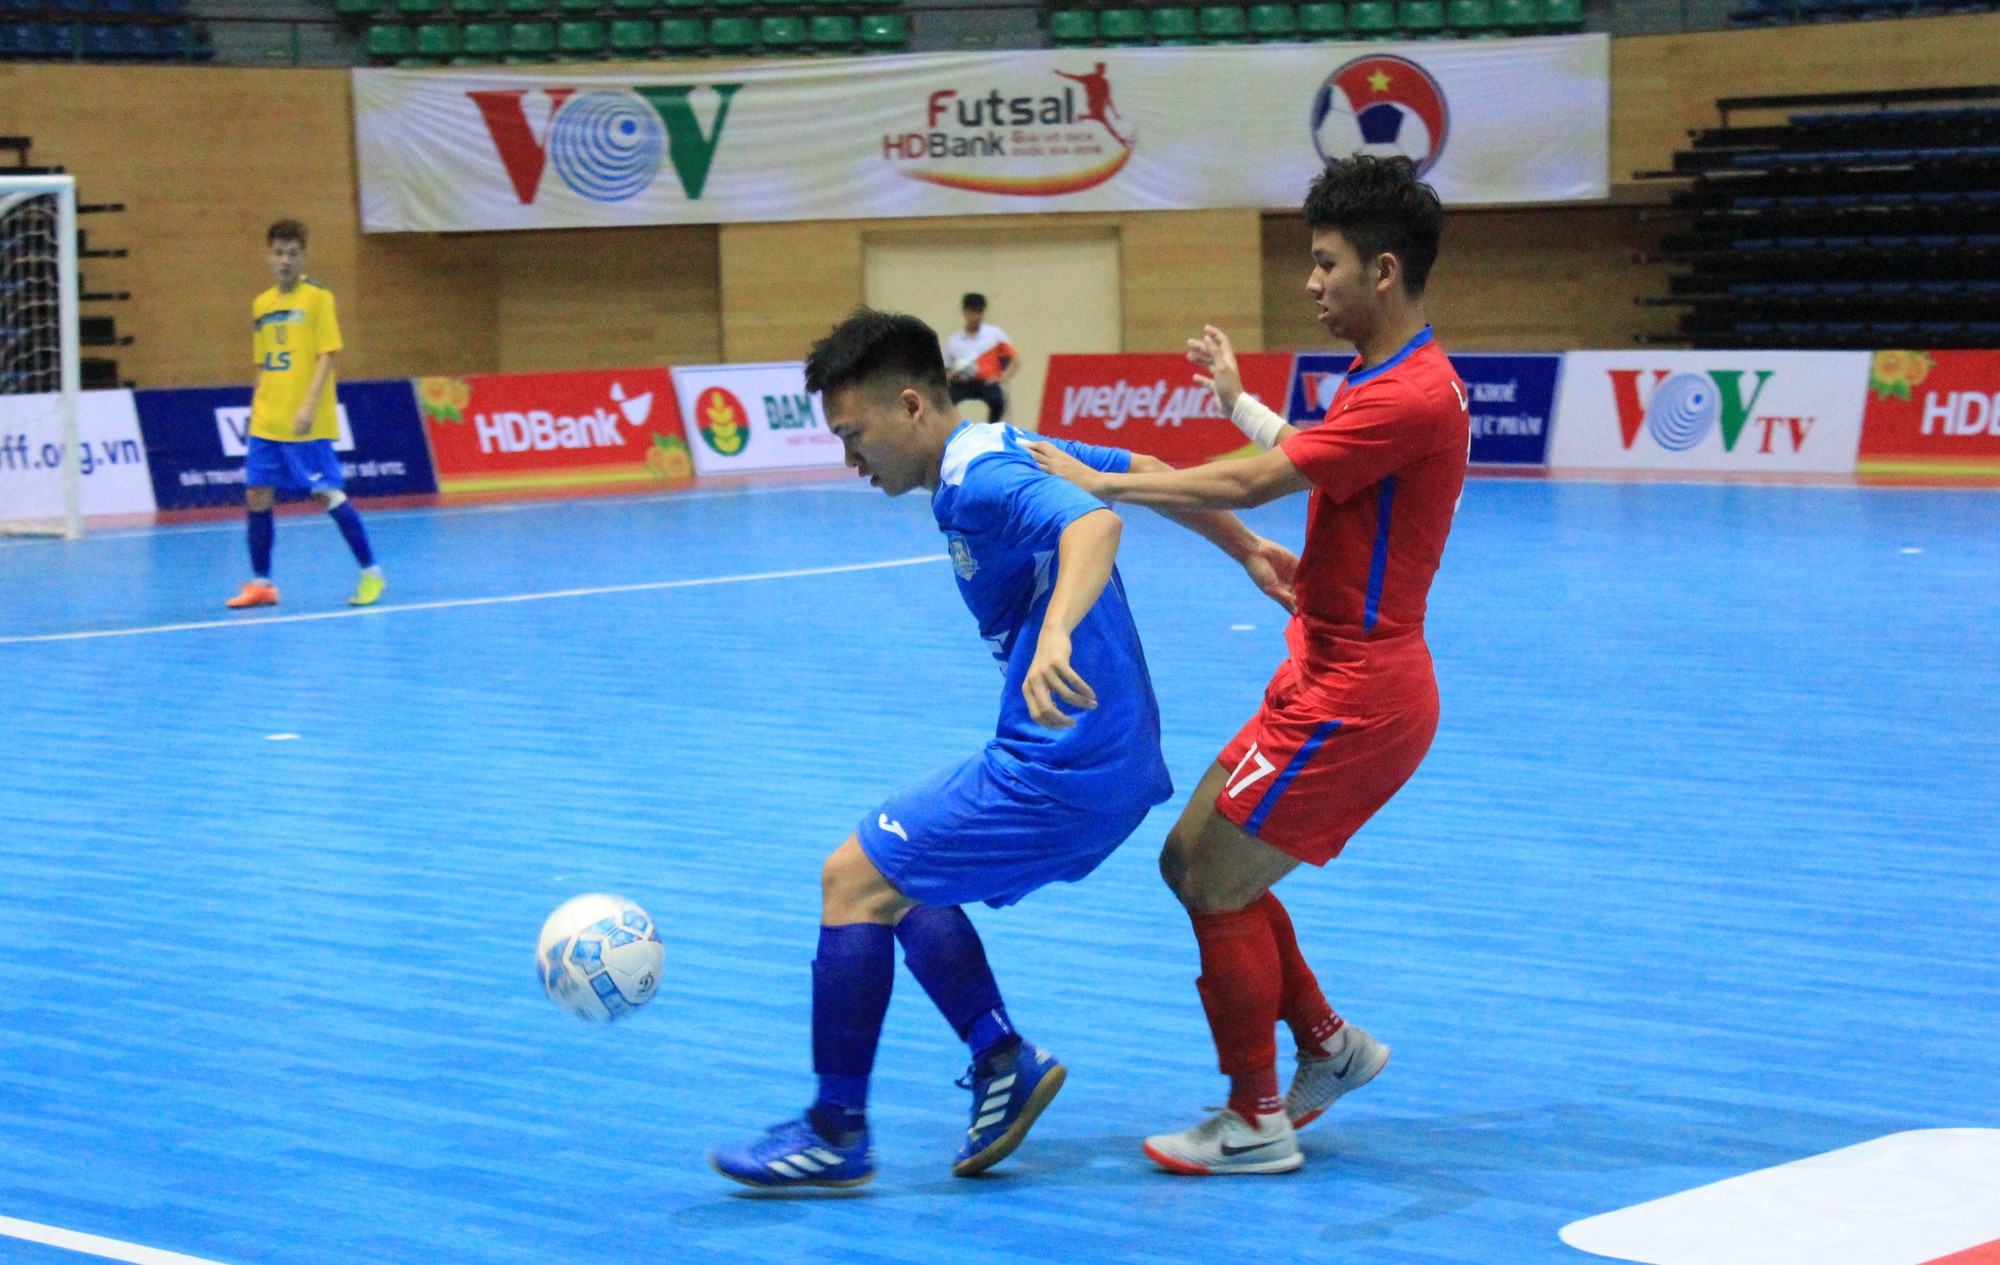 Sanna Khánh Hòa và Thái Sơn Bắc thất bại tan nát ở Futsal VĐQG - Ảnh 1.